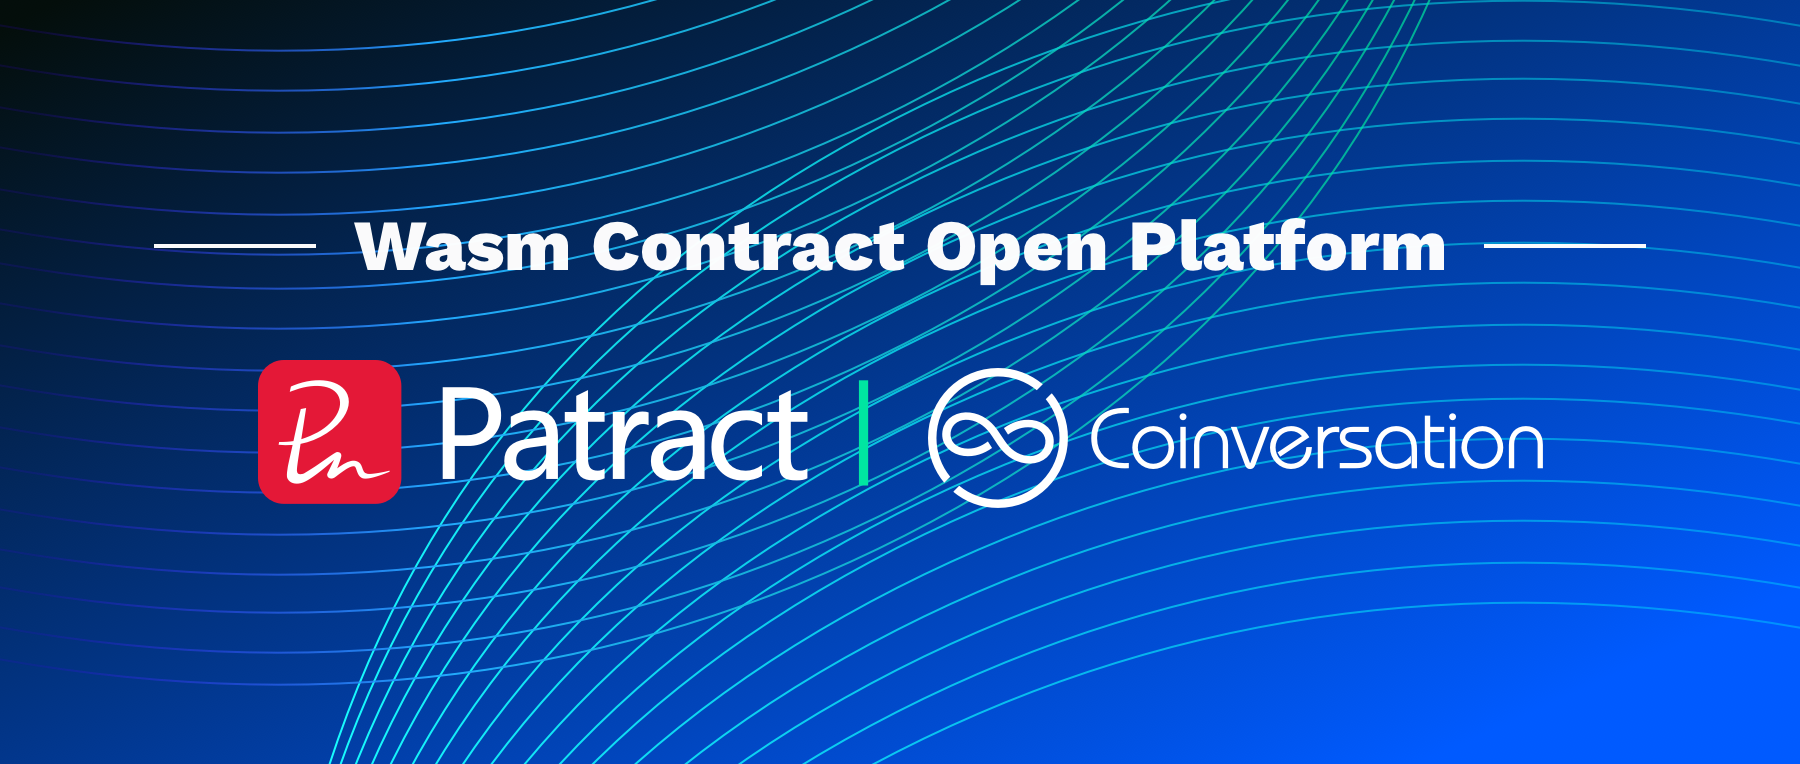 波卡合成资产协议Coinversation与Patract合作共建Wasm合约开放平台